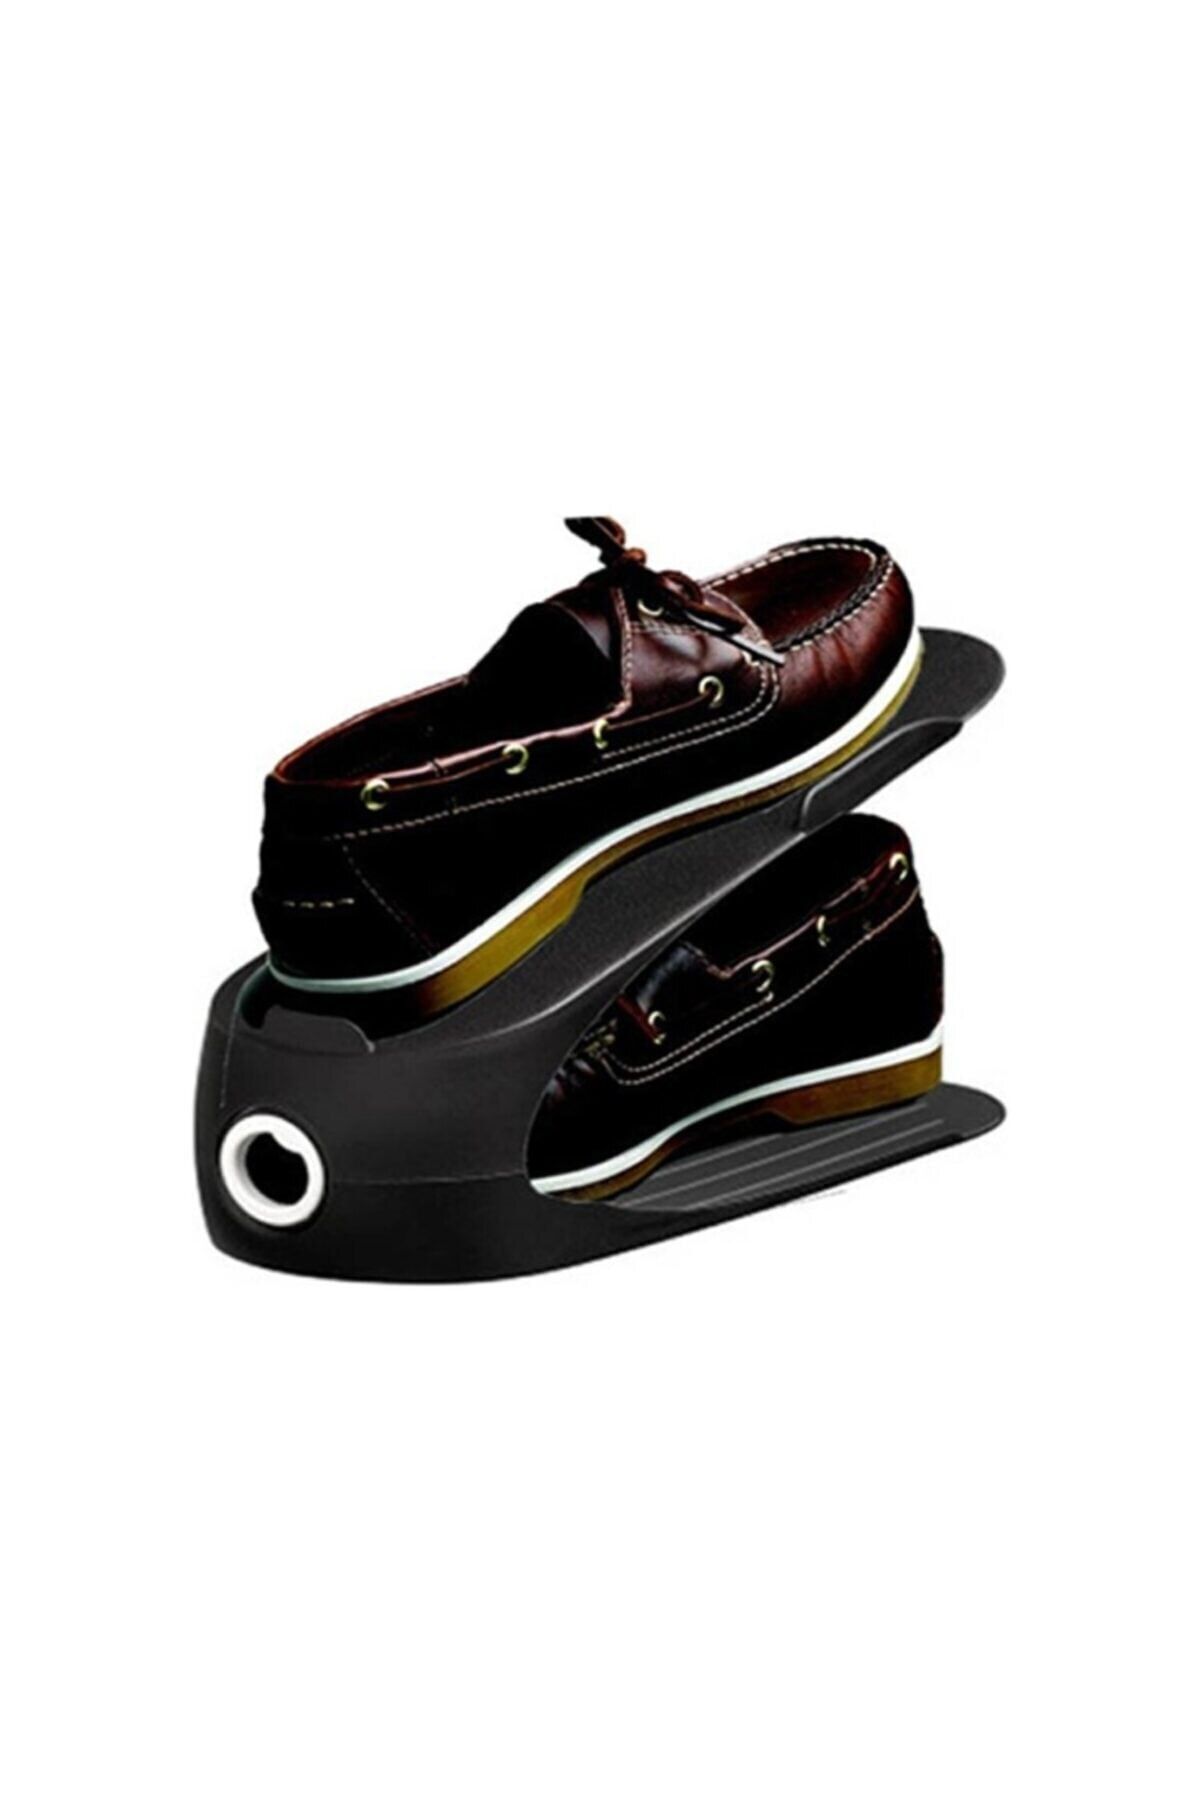 Genel Markalar Gondol Ayakkabı Rampası 10 Adet Siyah - Ayakkabı Standı Orijinal Gondol